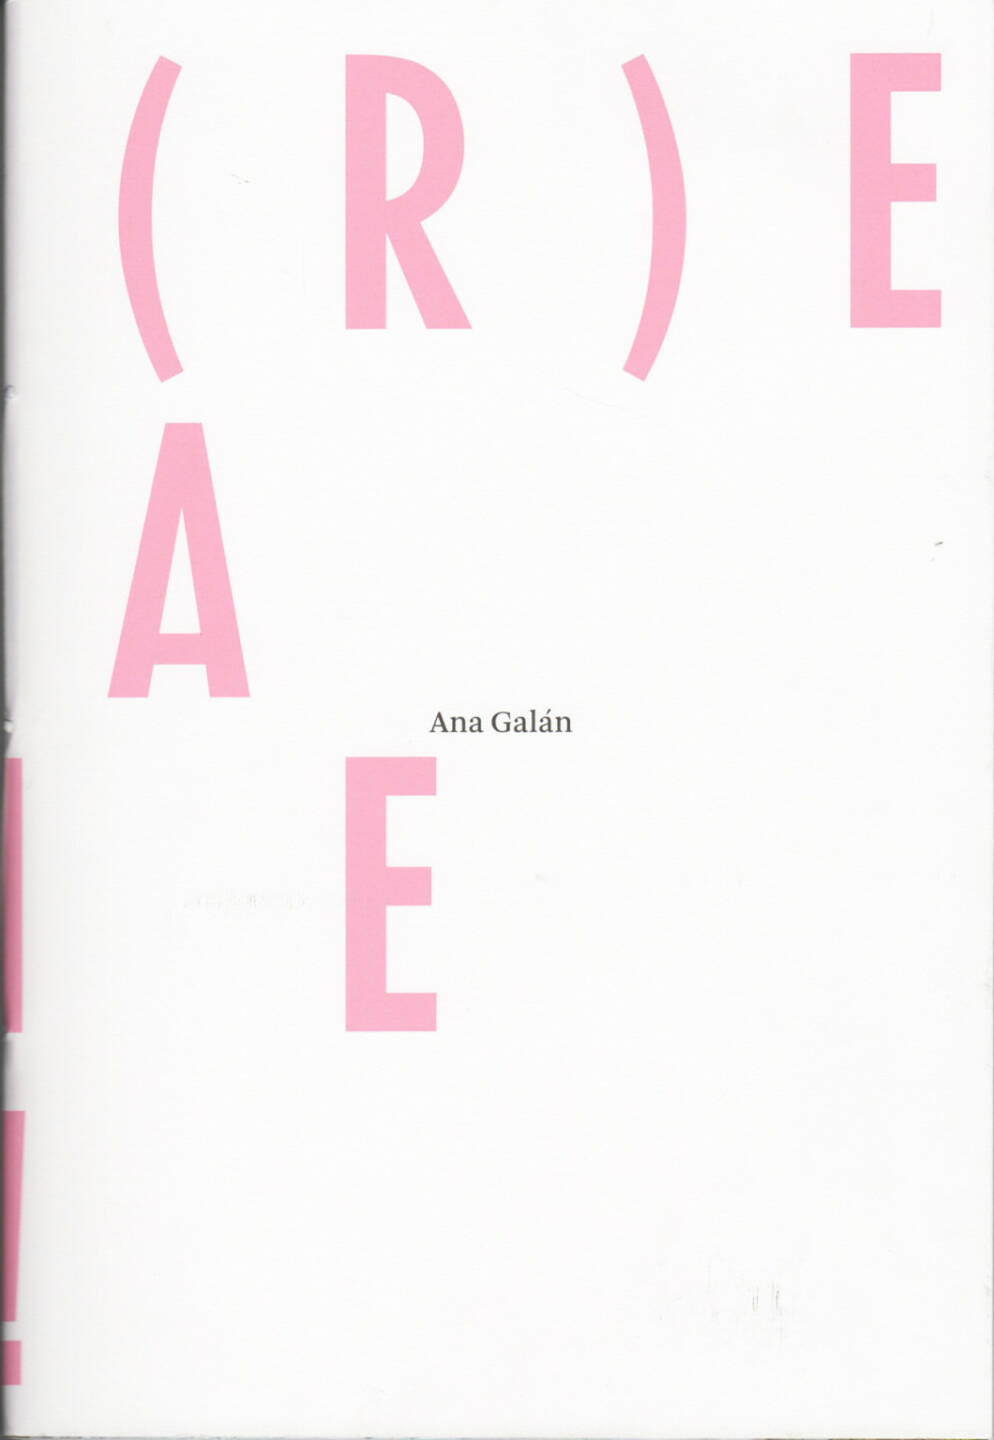 Ana Galan - V l V ( R ) E L A V I E !, Self published 2014, Cover - http://josefchladek.com/book/ana_galan_-_v_l_v_r_e_l_a_v_i_e